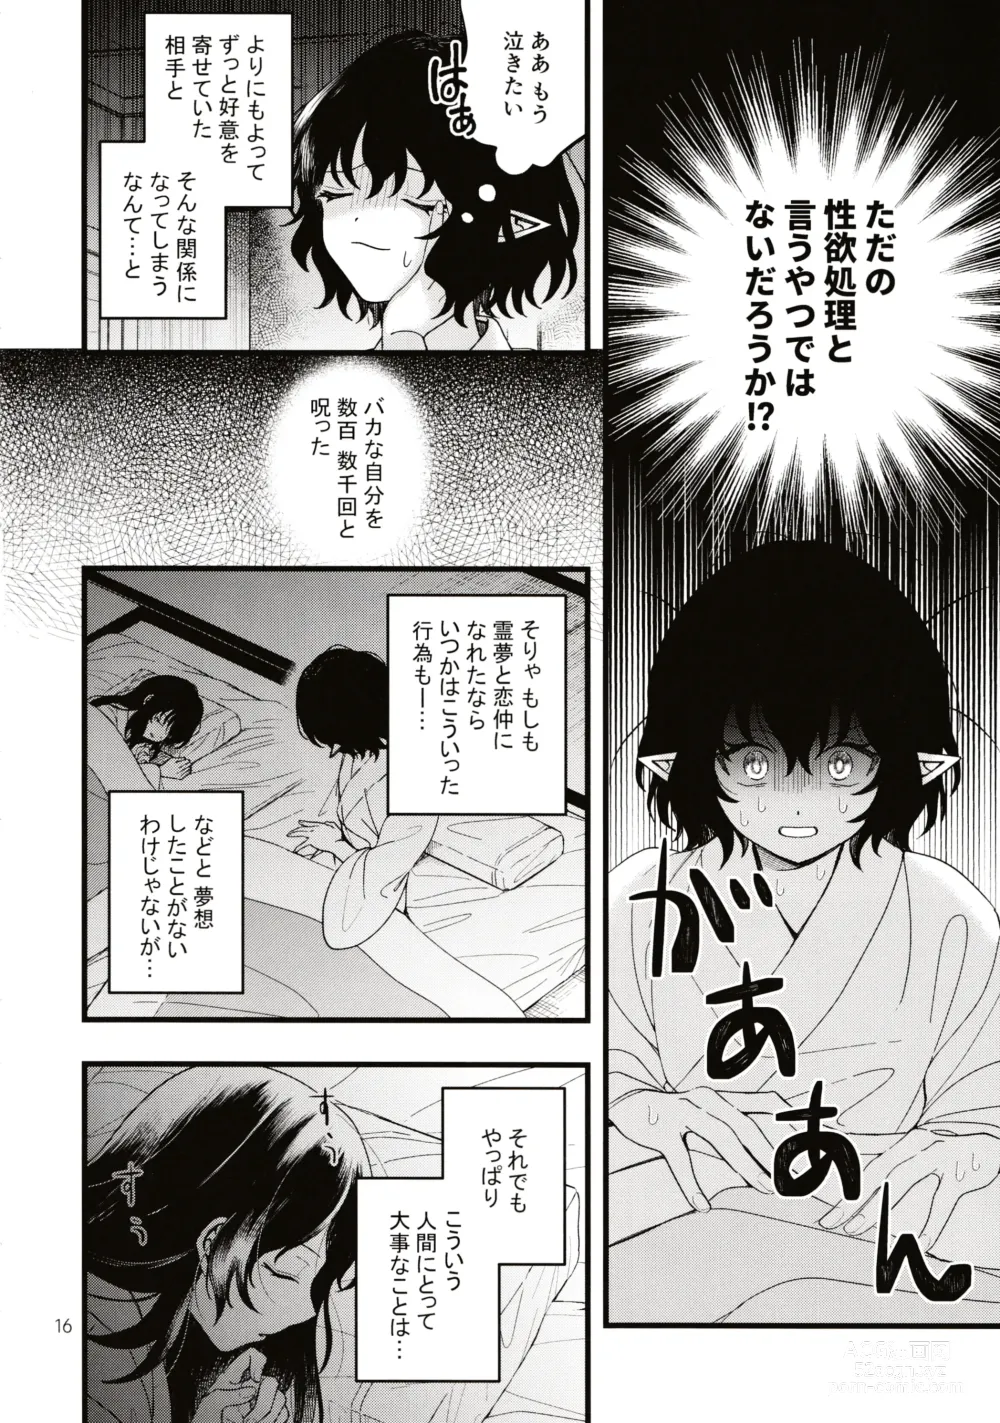 Page 15 of doujinshi Rubeus no Kankai